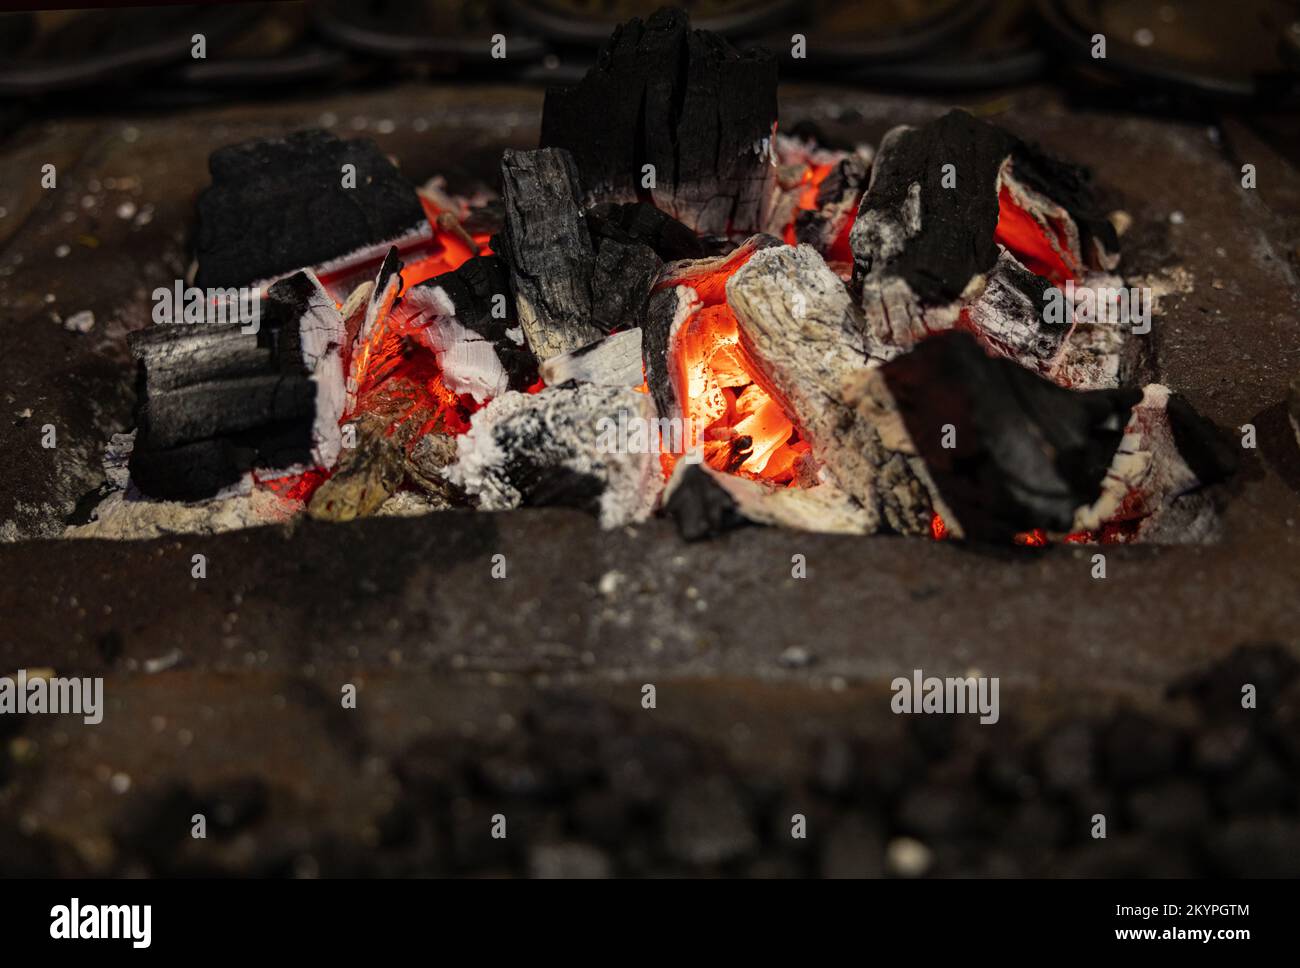 Malerische brennende, helle Kohlen schwelen in einem Metallständer Stockfoto